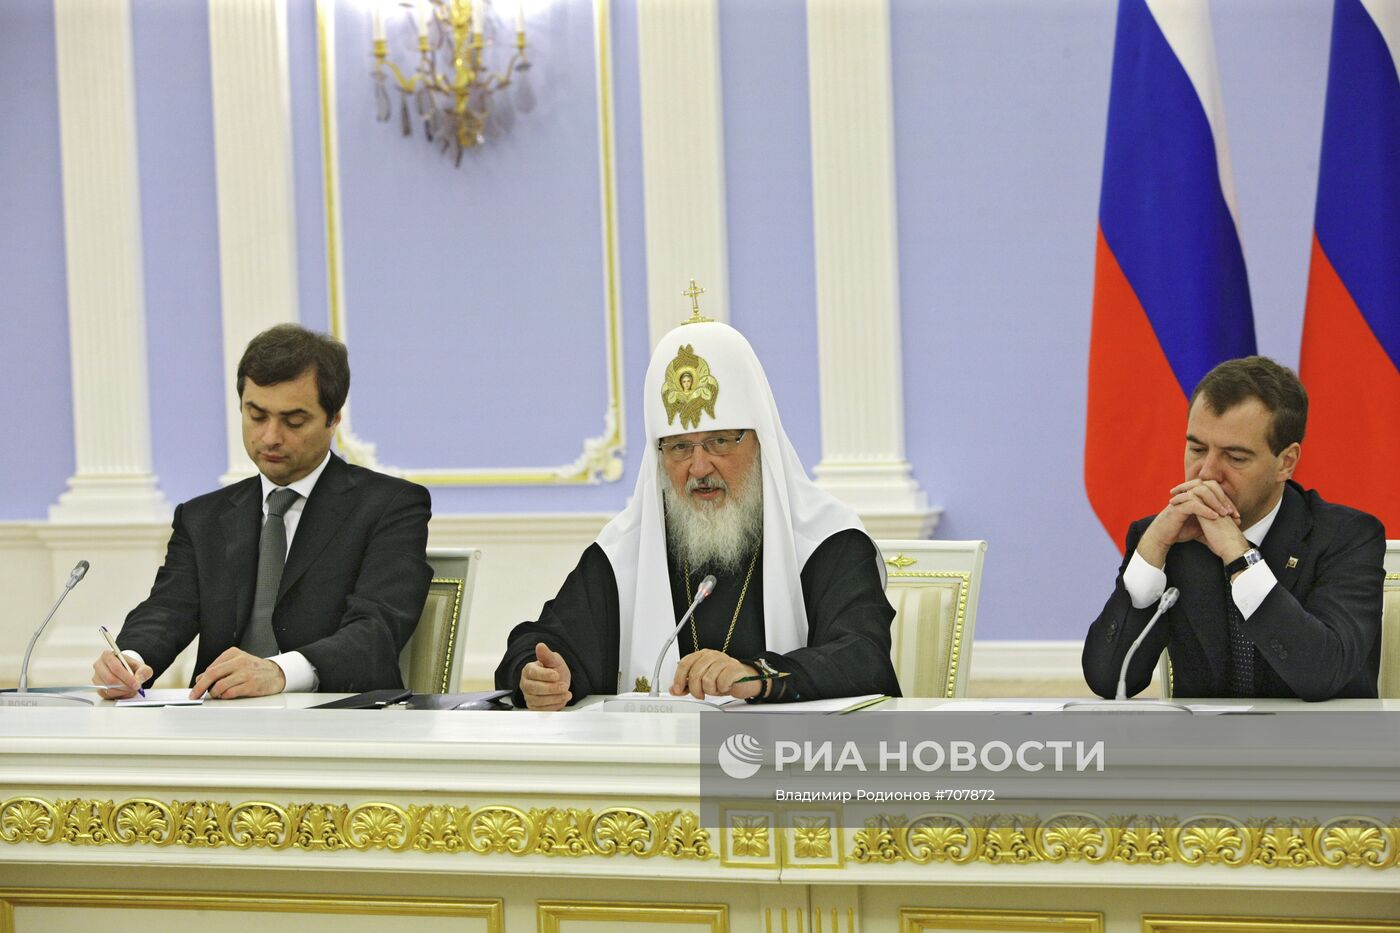 Д.Медведев встретился с членами попечительского совета